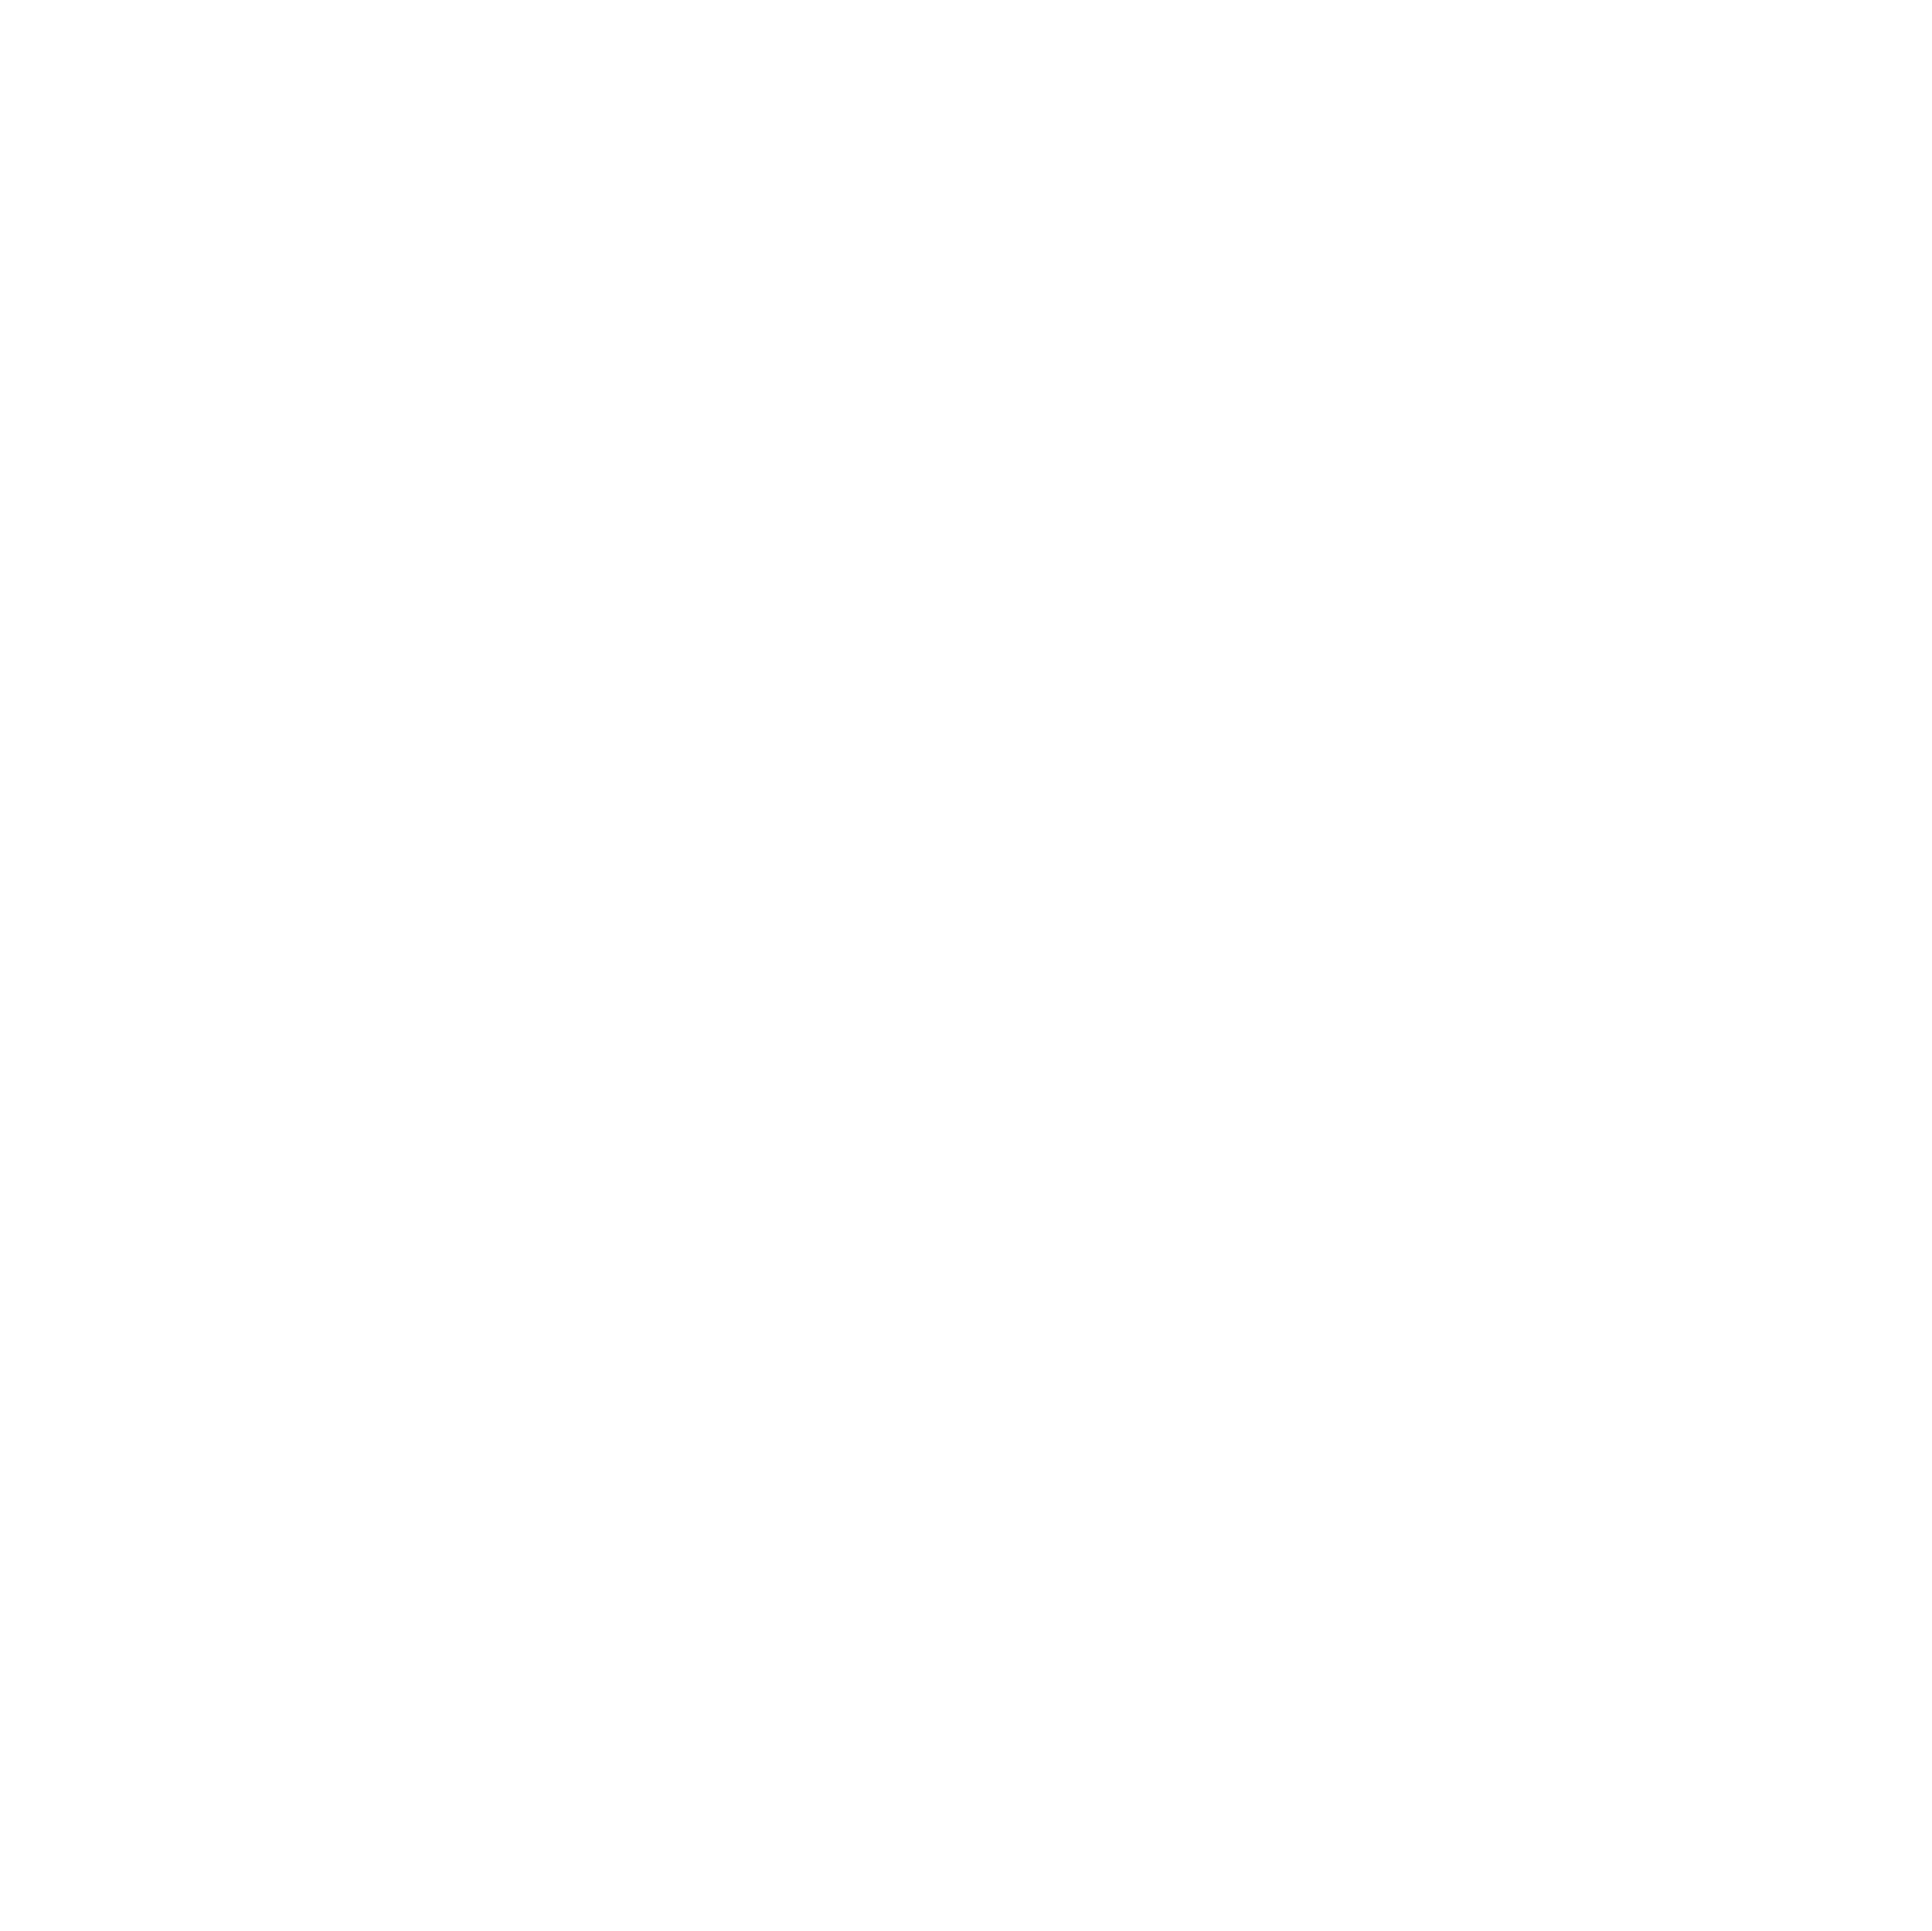 協和工業 Instagramページ